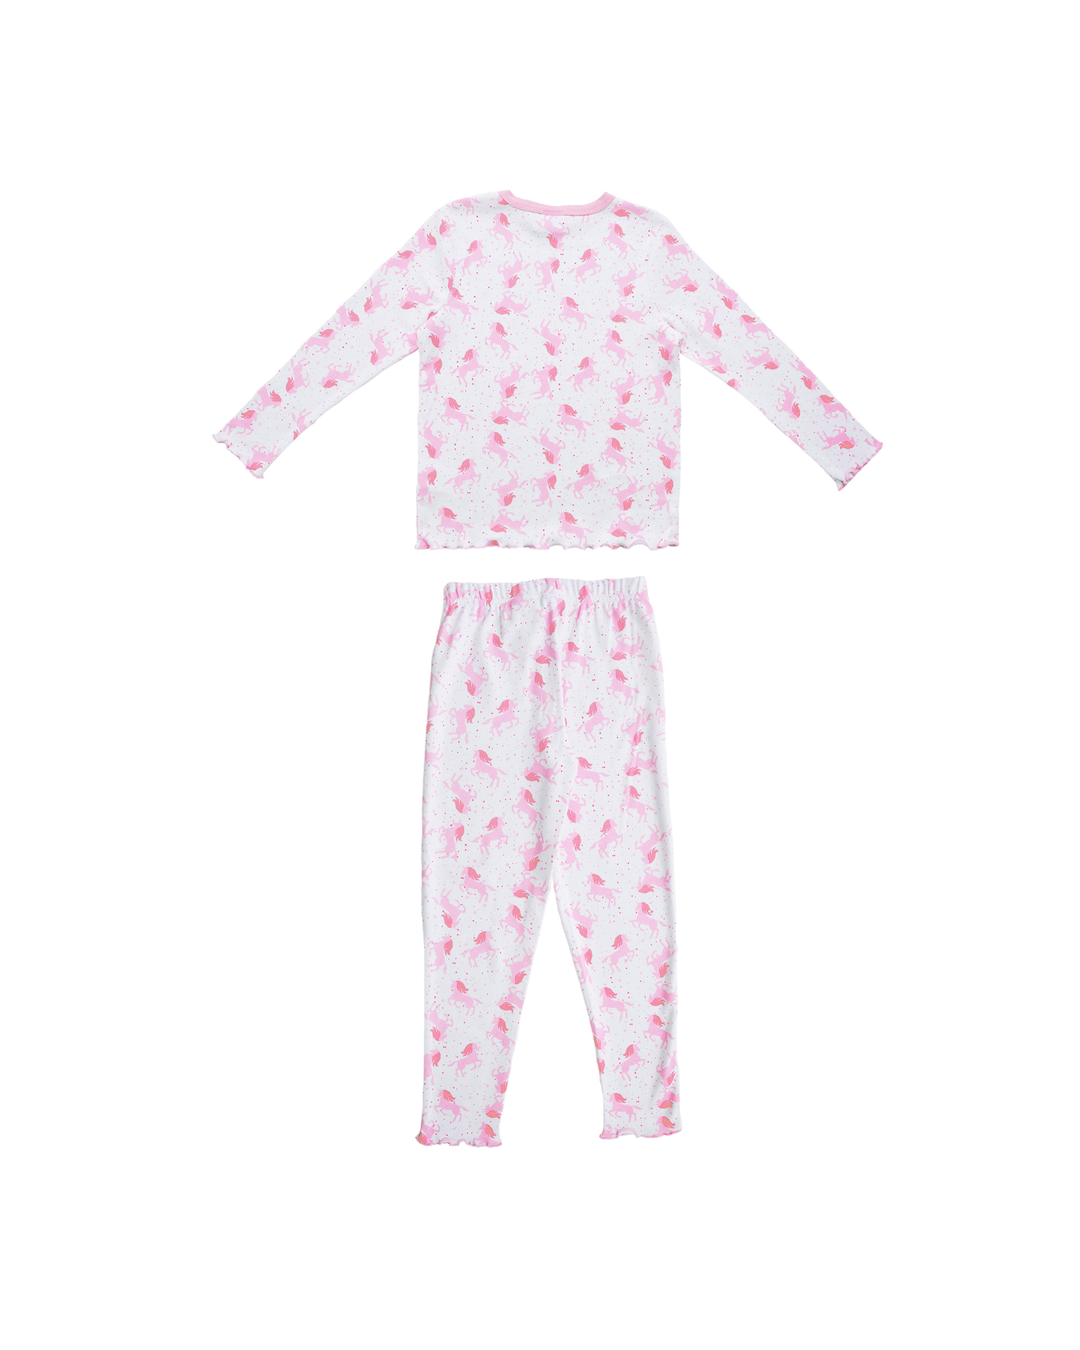 Pijama blanca con unicornios rosados